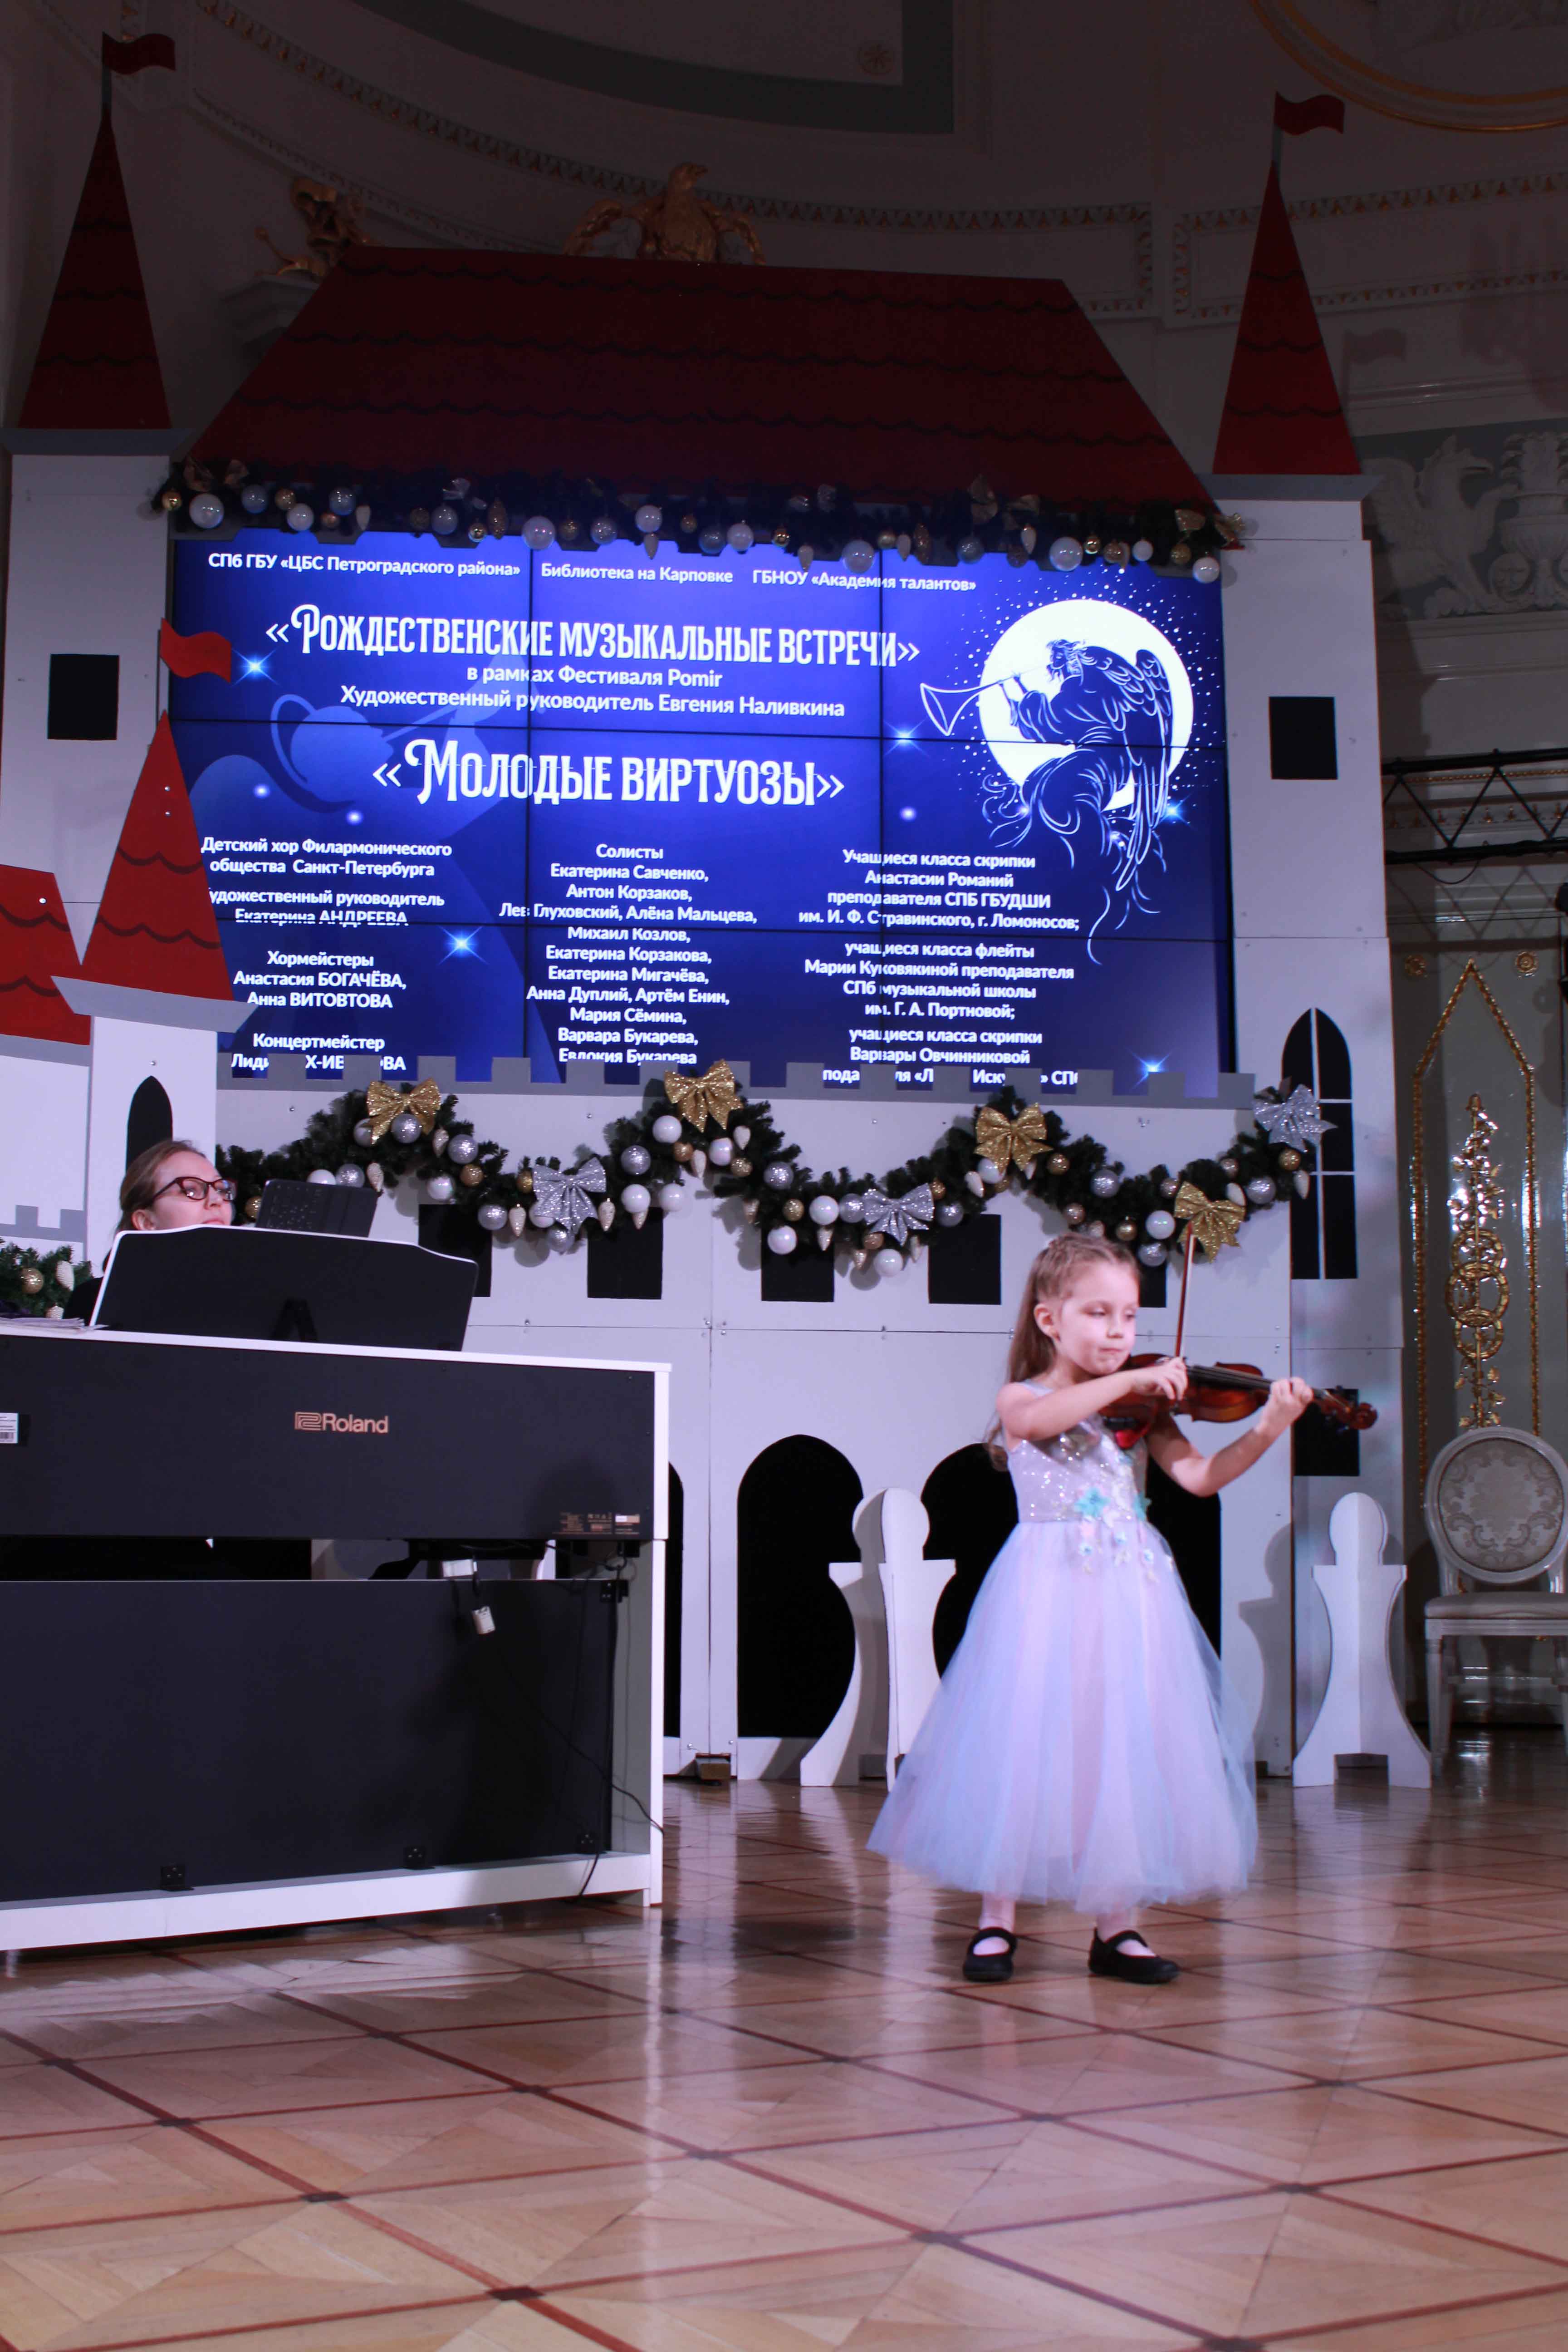 Ярким продолжением «Рождественских музыкальных встреч» в гостеприимной Академии талантов 11 января стало выступление Детского хора Филармонического общества Санкт-Петербурга